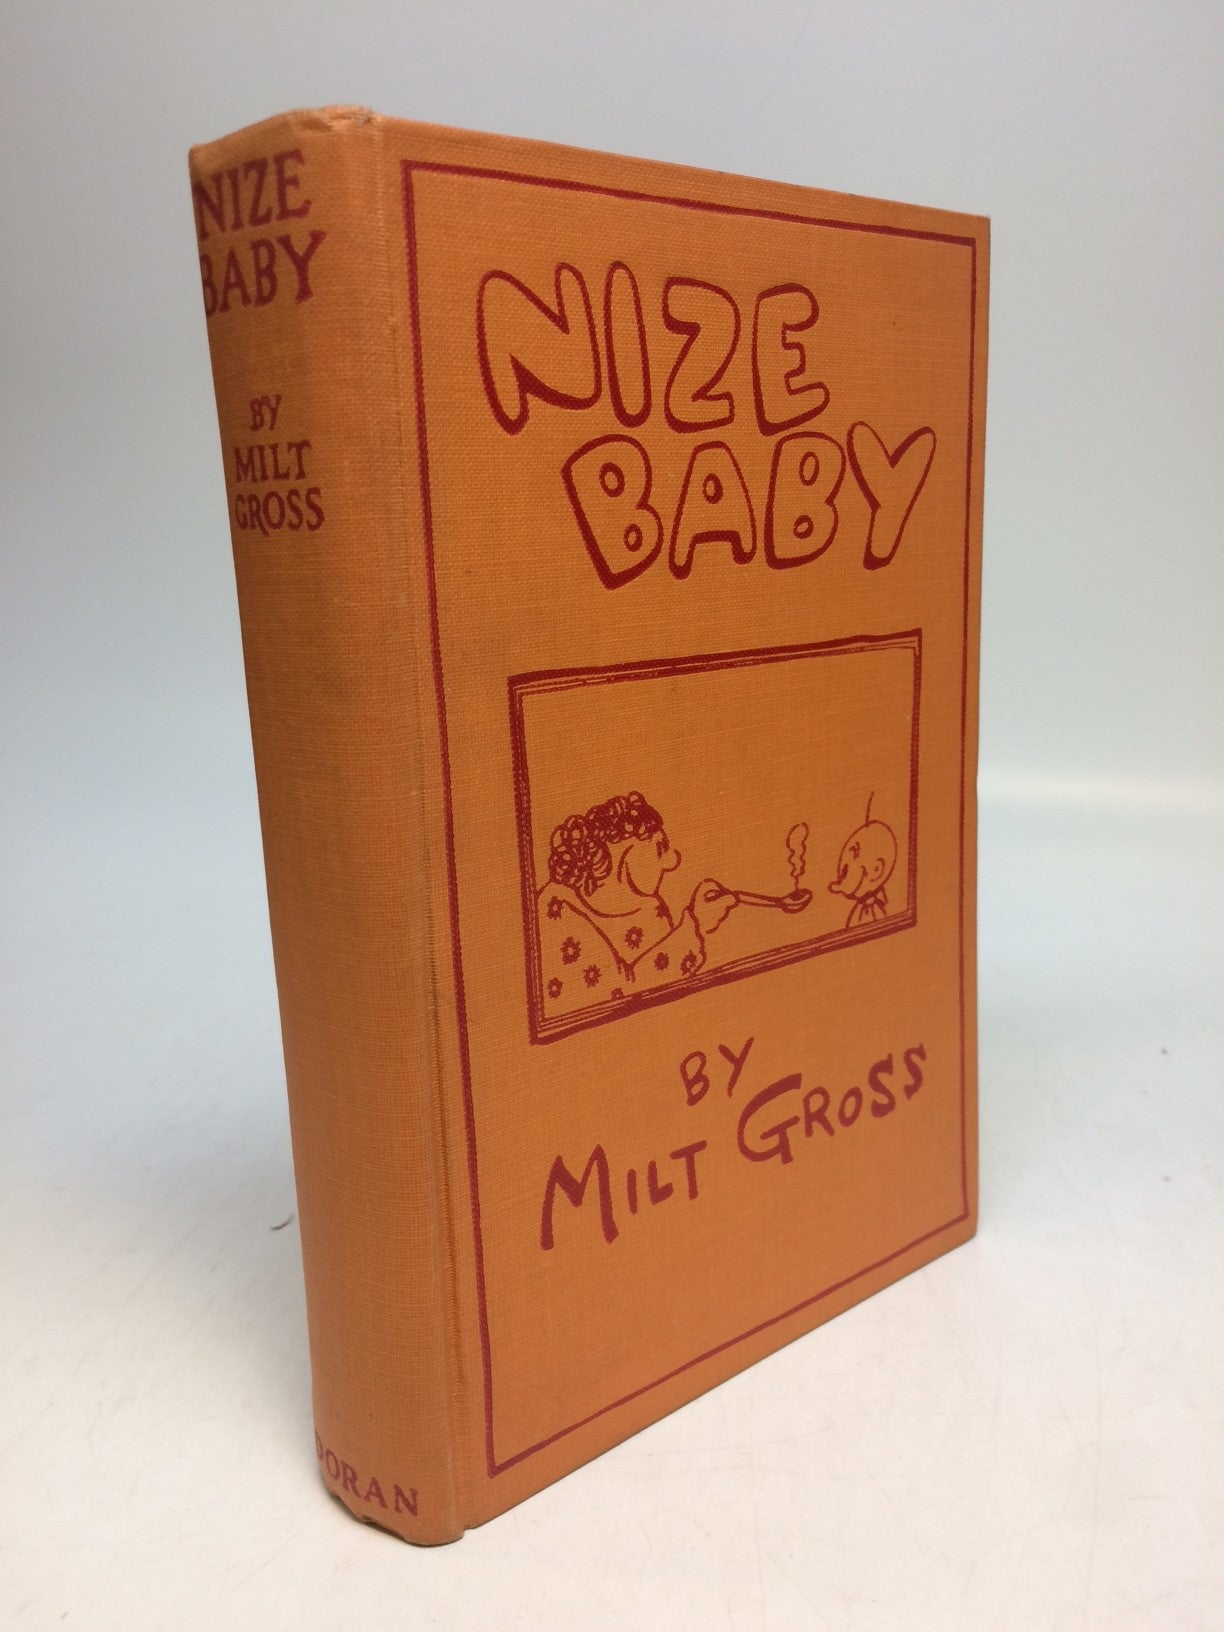 Baby　GROSS　Milt　Nize　First